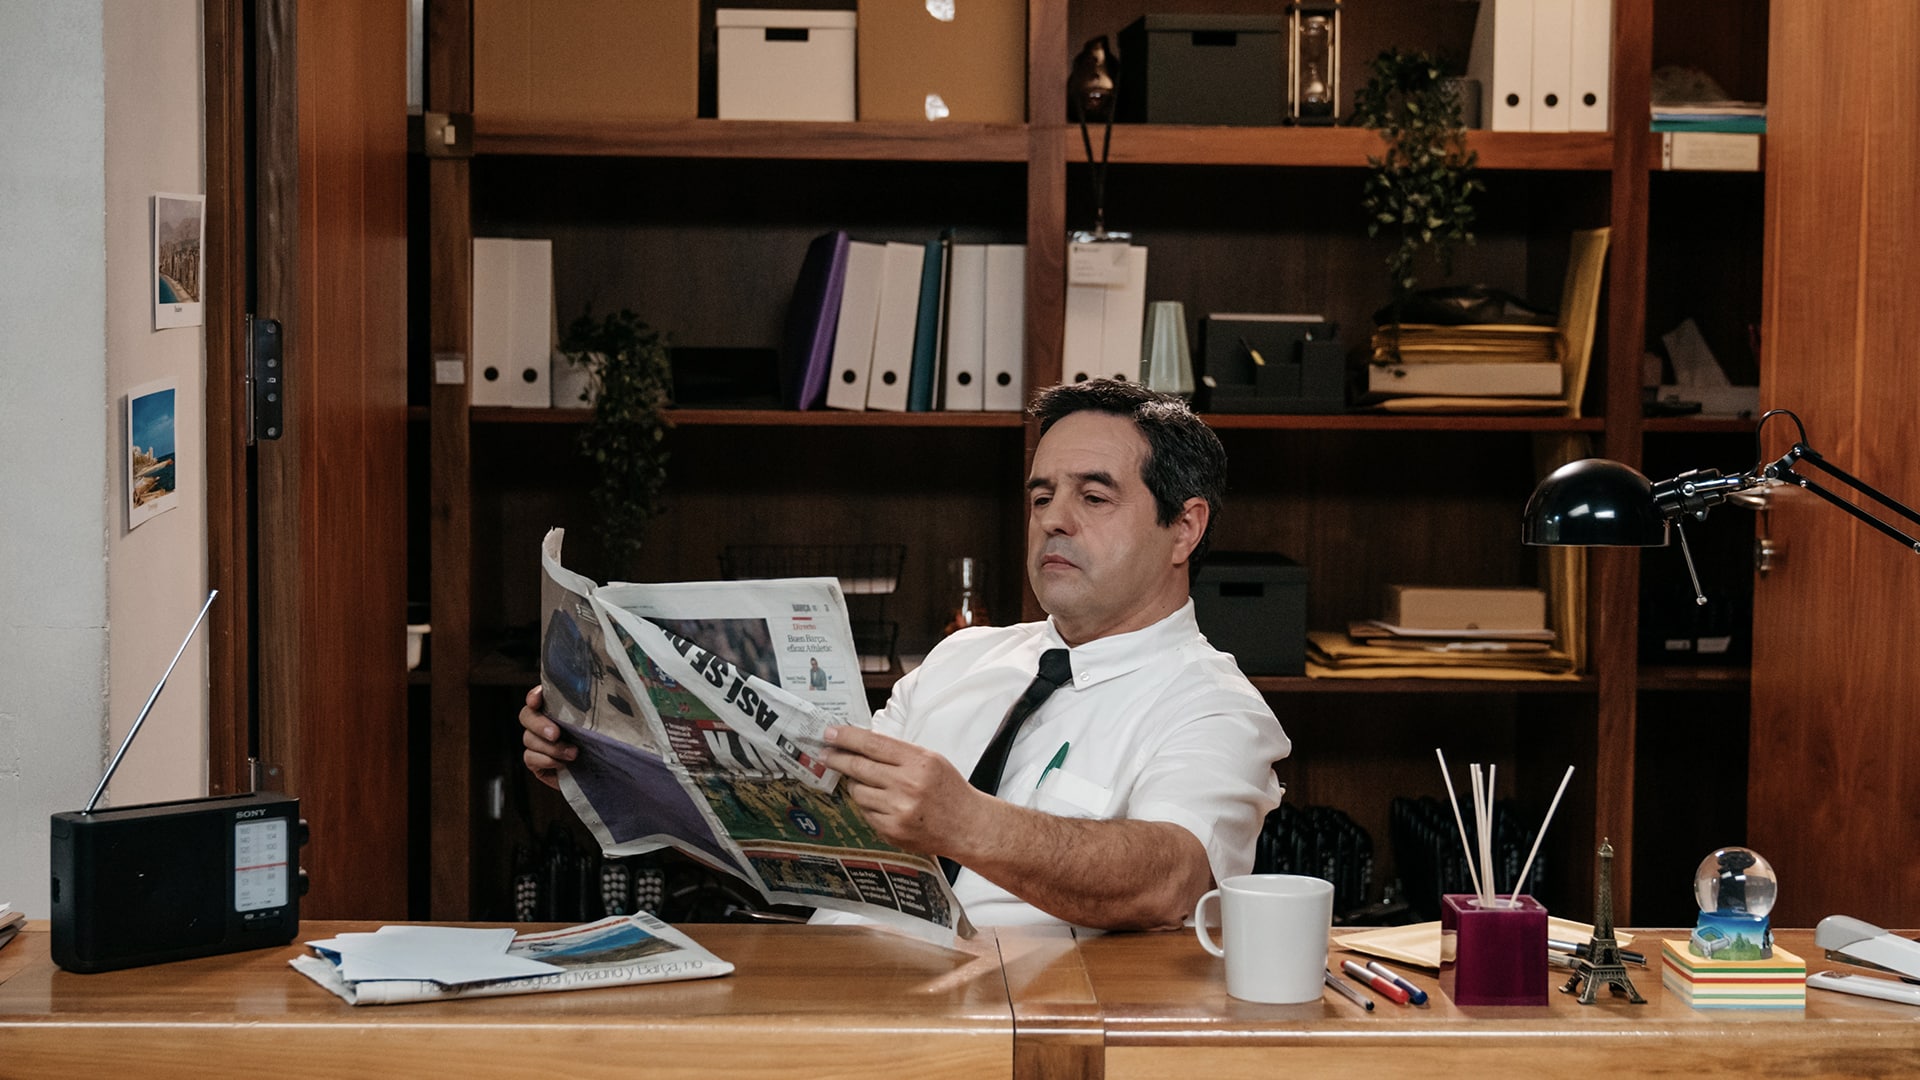 Juan Carlos, el portero, leyendo un periódcio deportivo